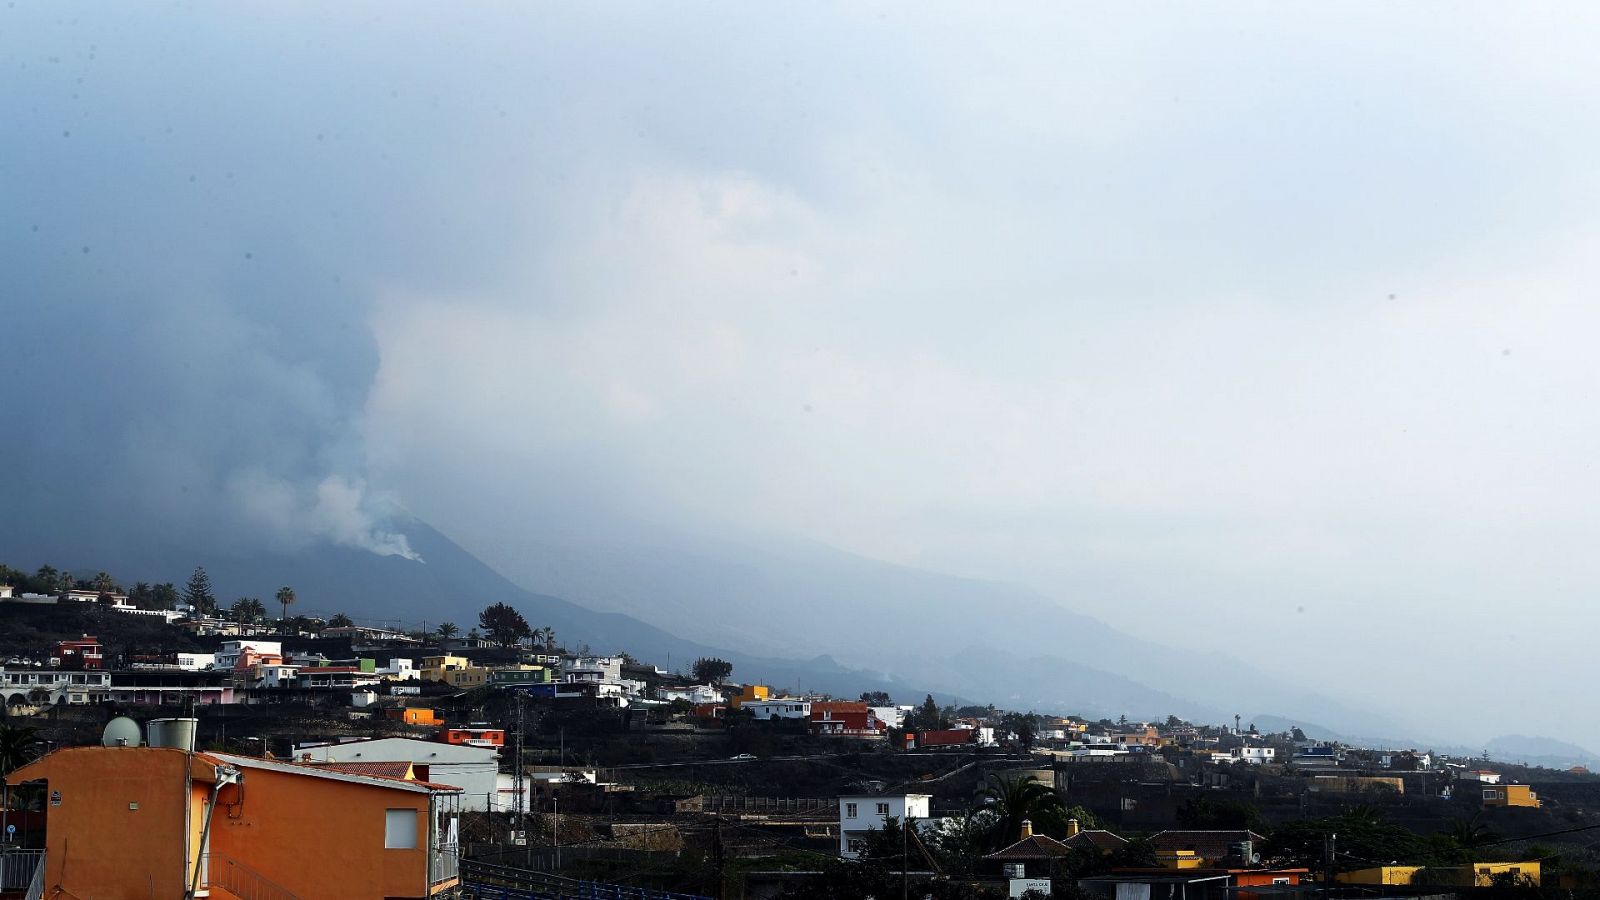 El volcán de Cumbre Vieja continúa su actividad emitiendo gases, si bien las emisiones de dióxido de azufre registran menores niveles